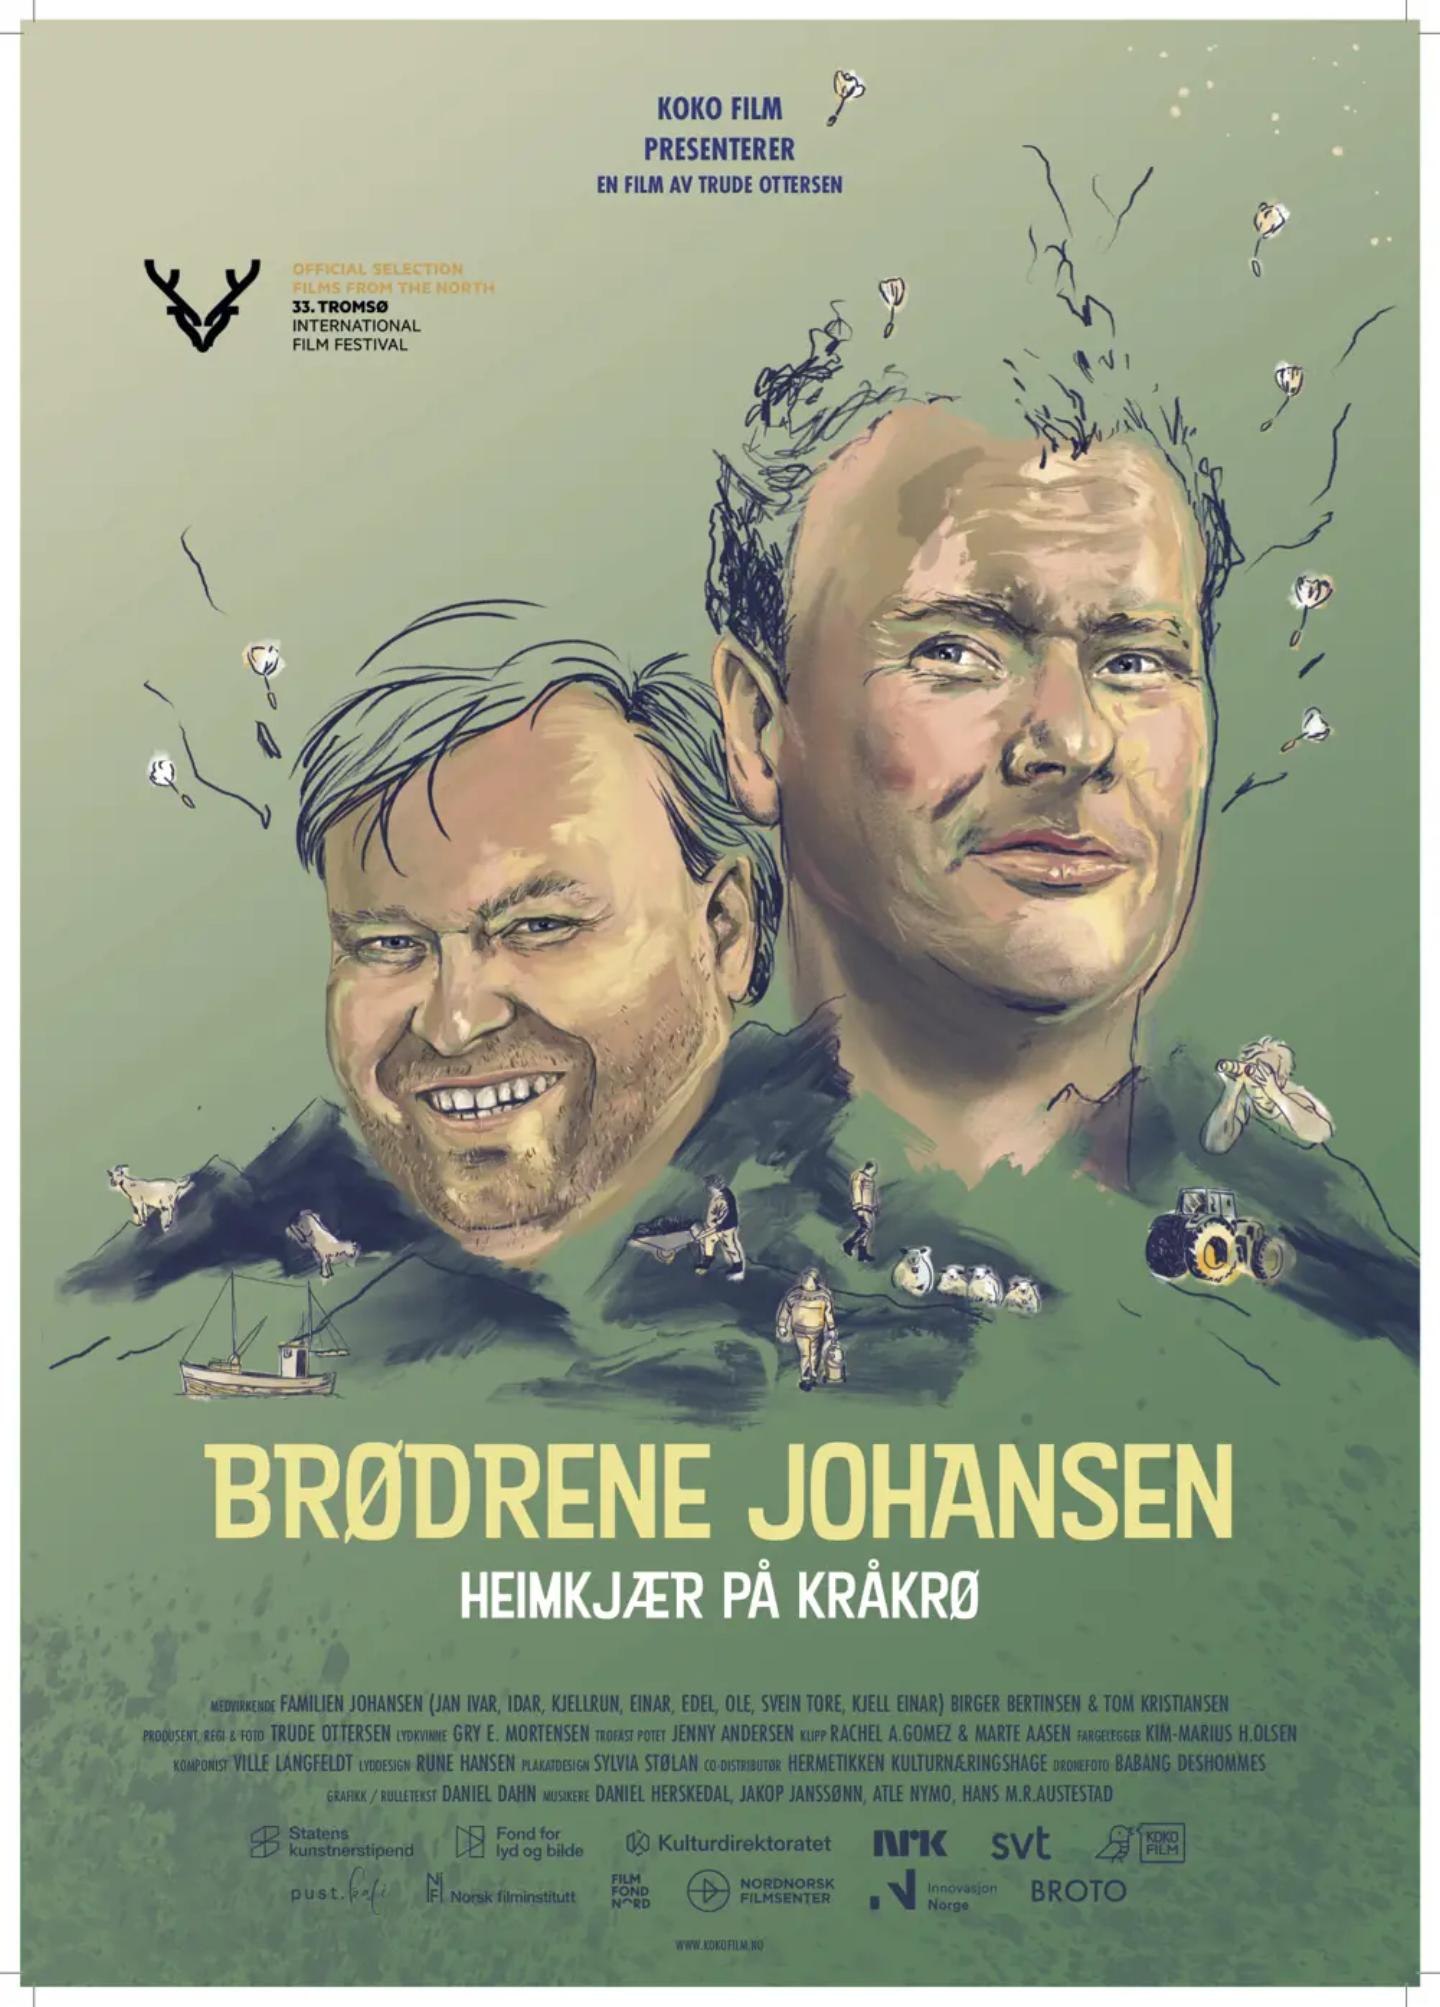 Plakat for 'Brødrene Johansen'